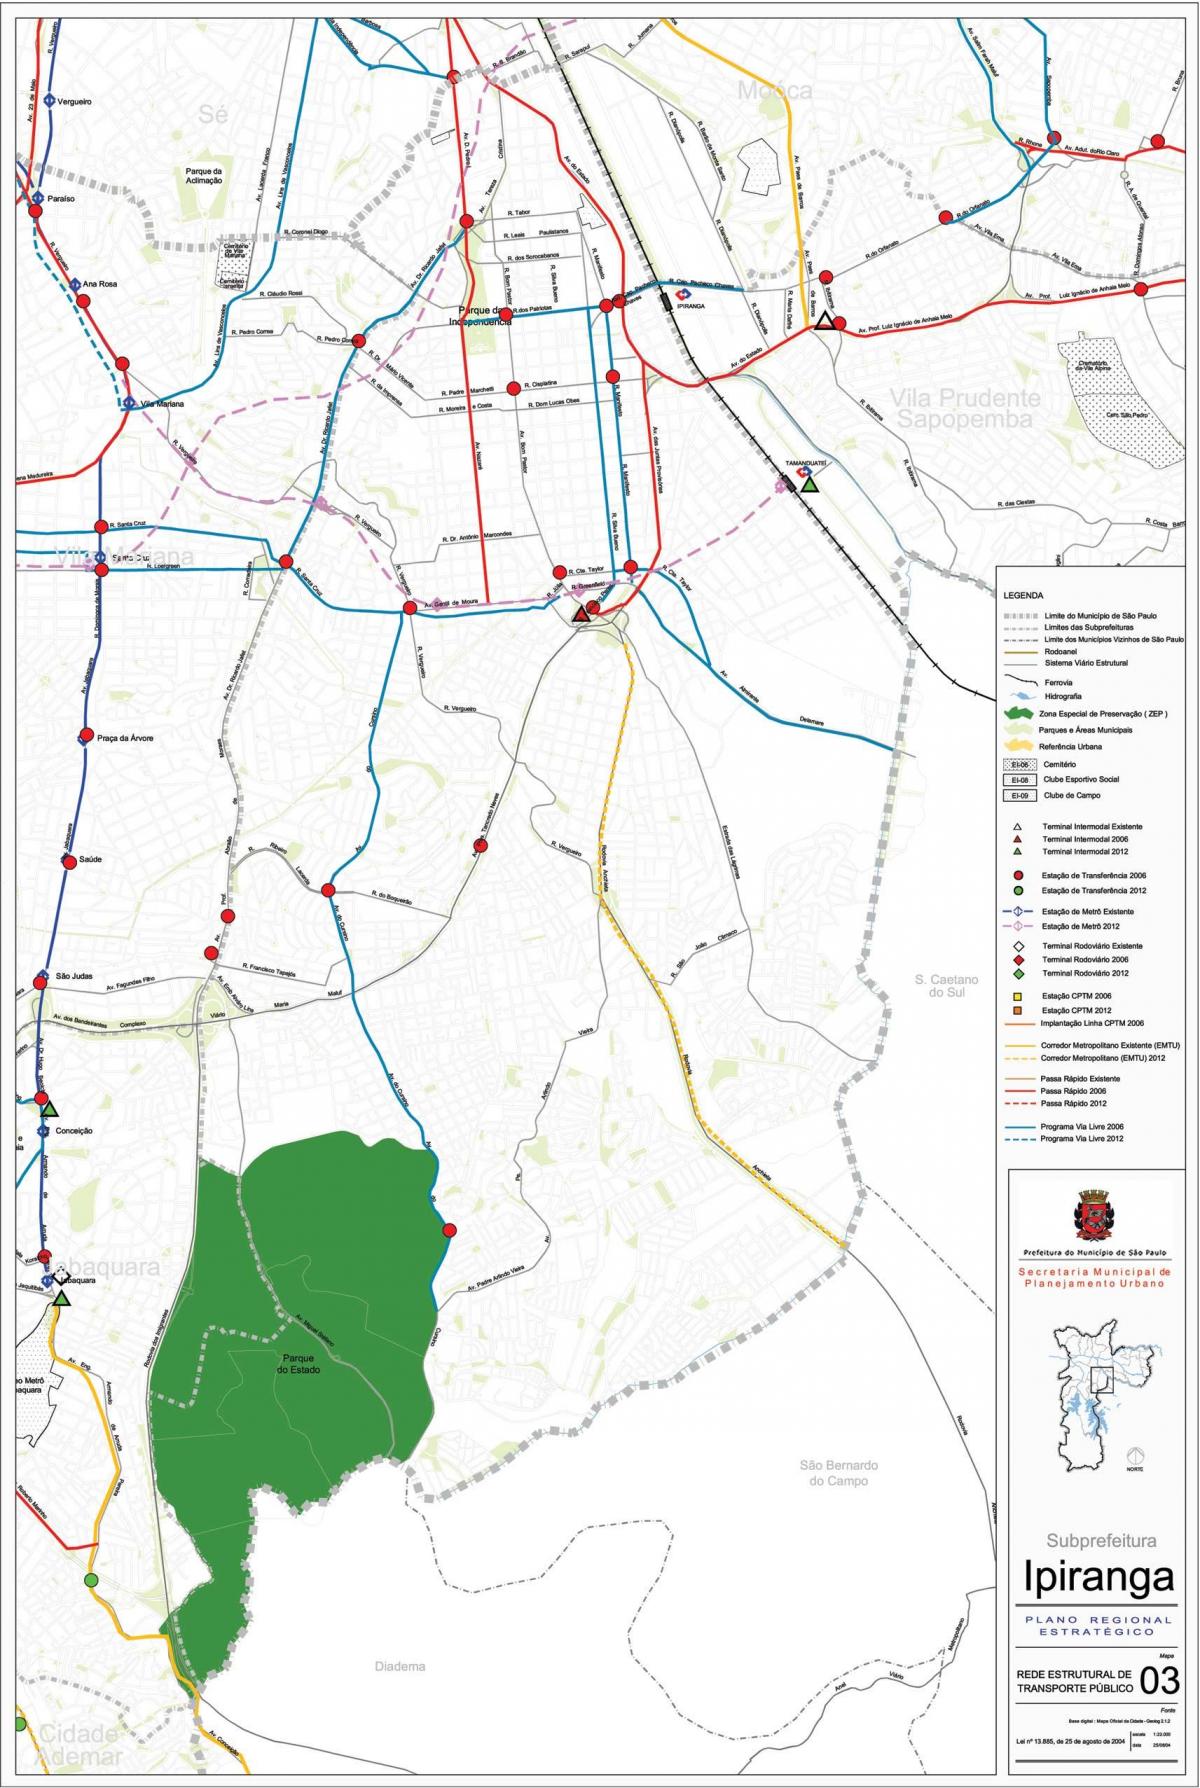 Քարտեզ Ипиранга-Սան - հասարակական տրանսպորտը